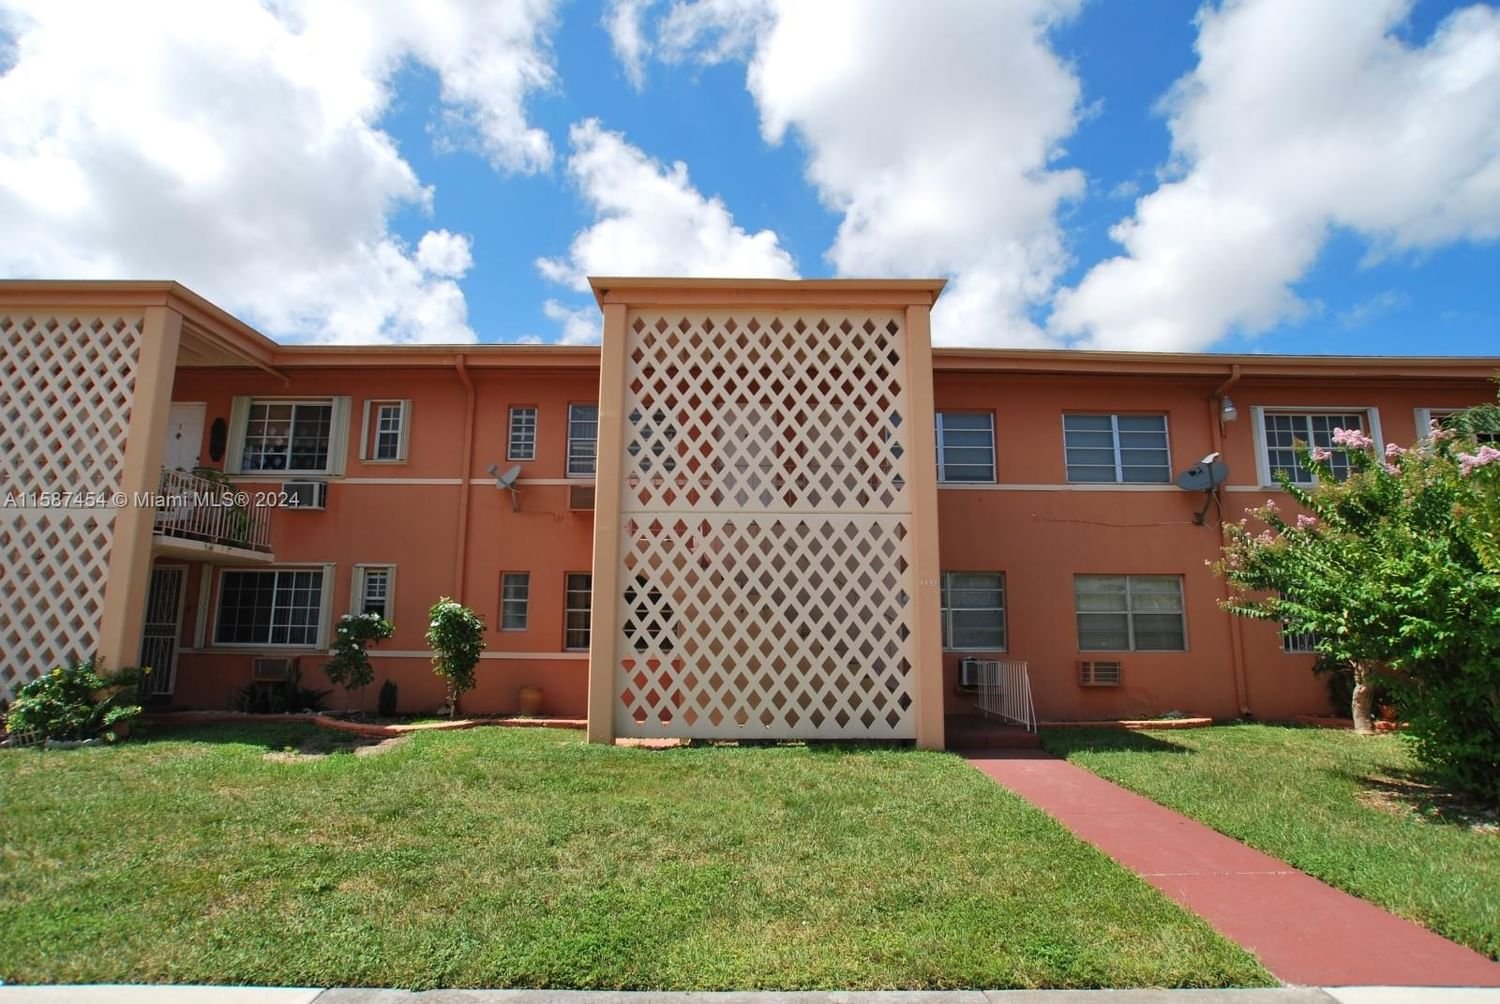 Real estate property located at 3451 11th St #4B, Miami-Dade County, CORAL GARDENS CONDO BLDG, Miami, FL